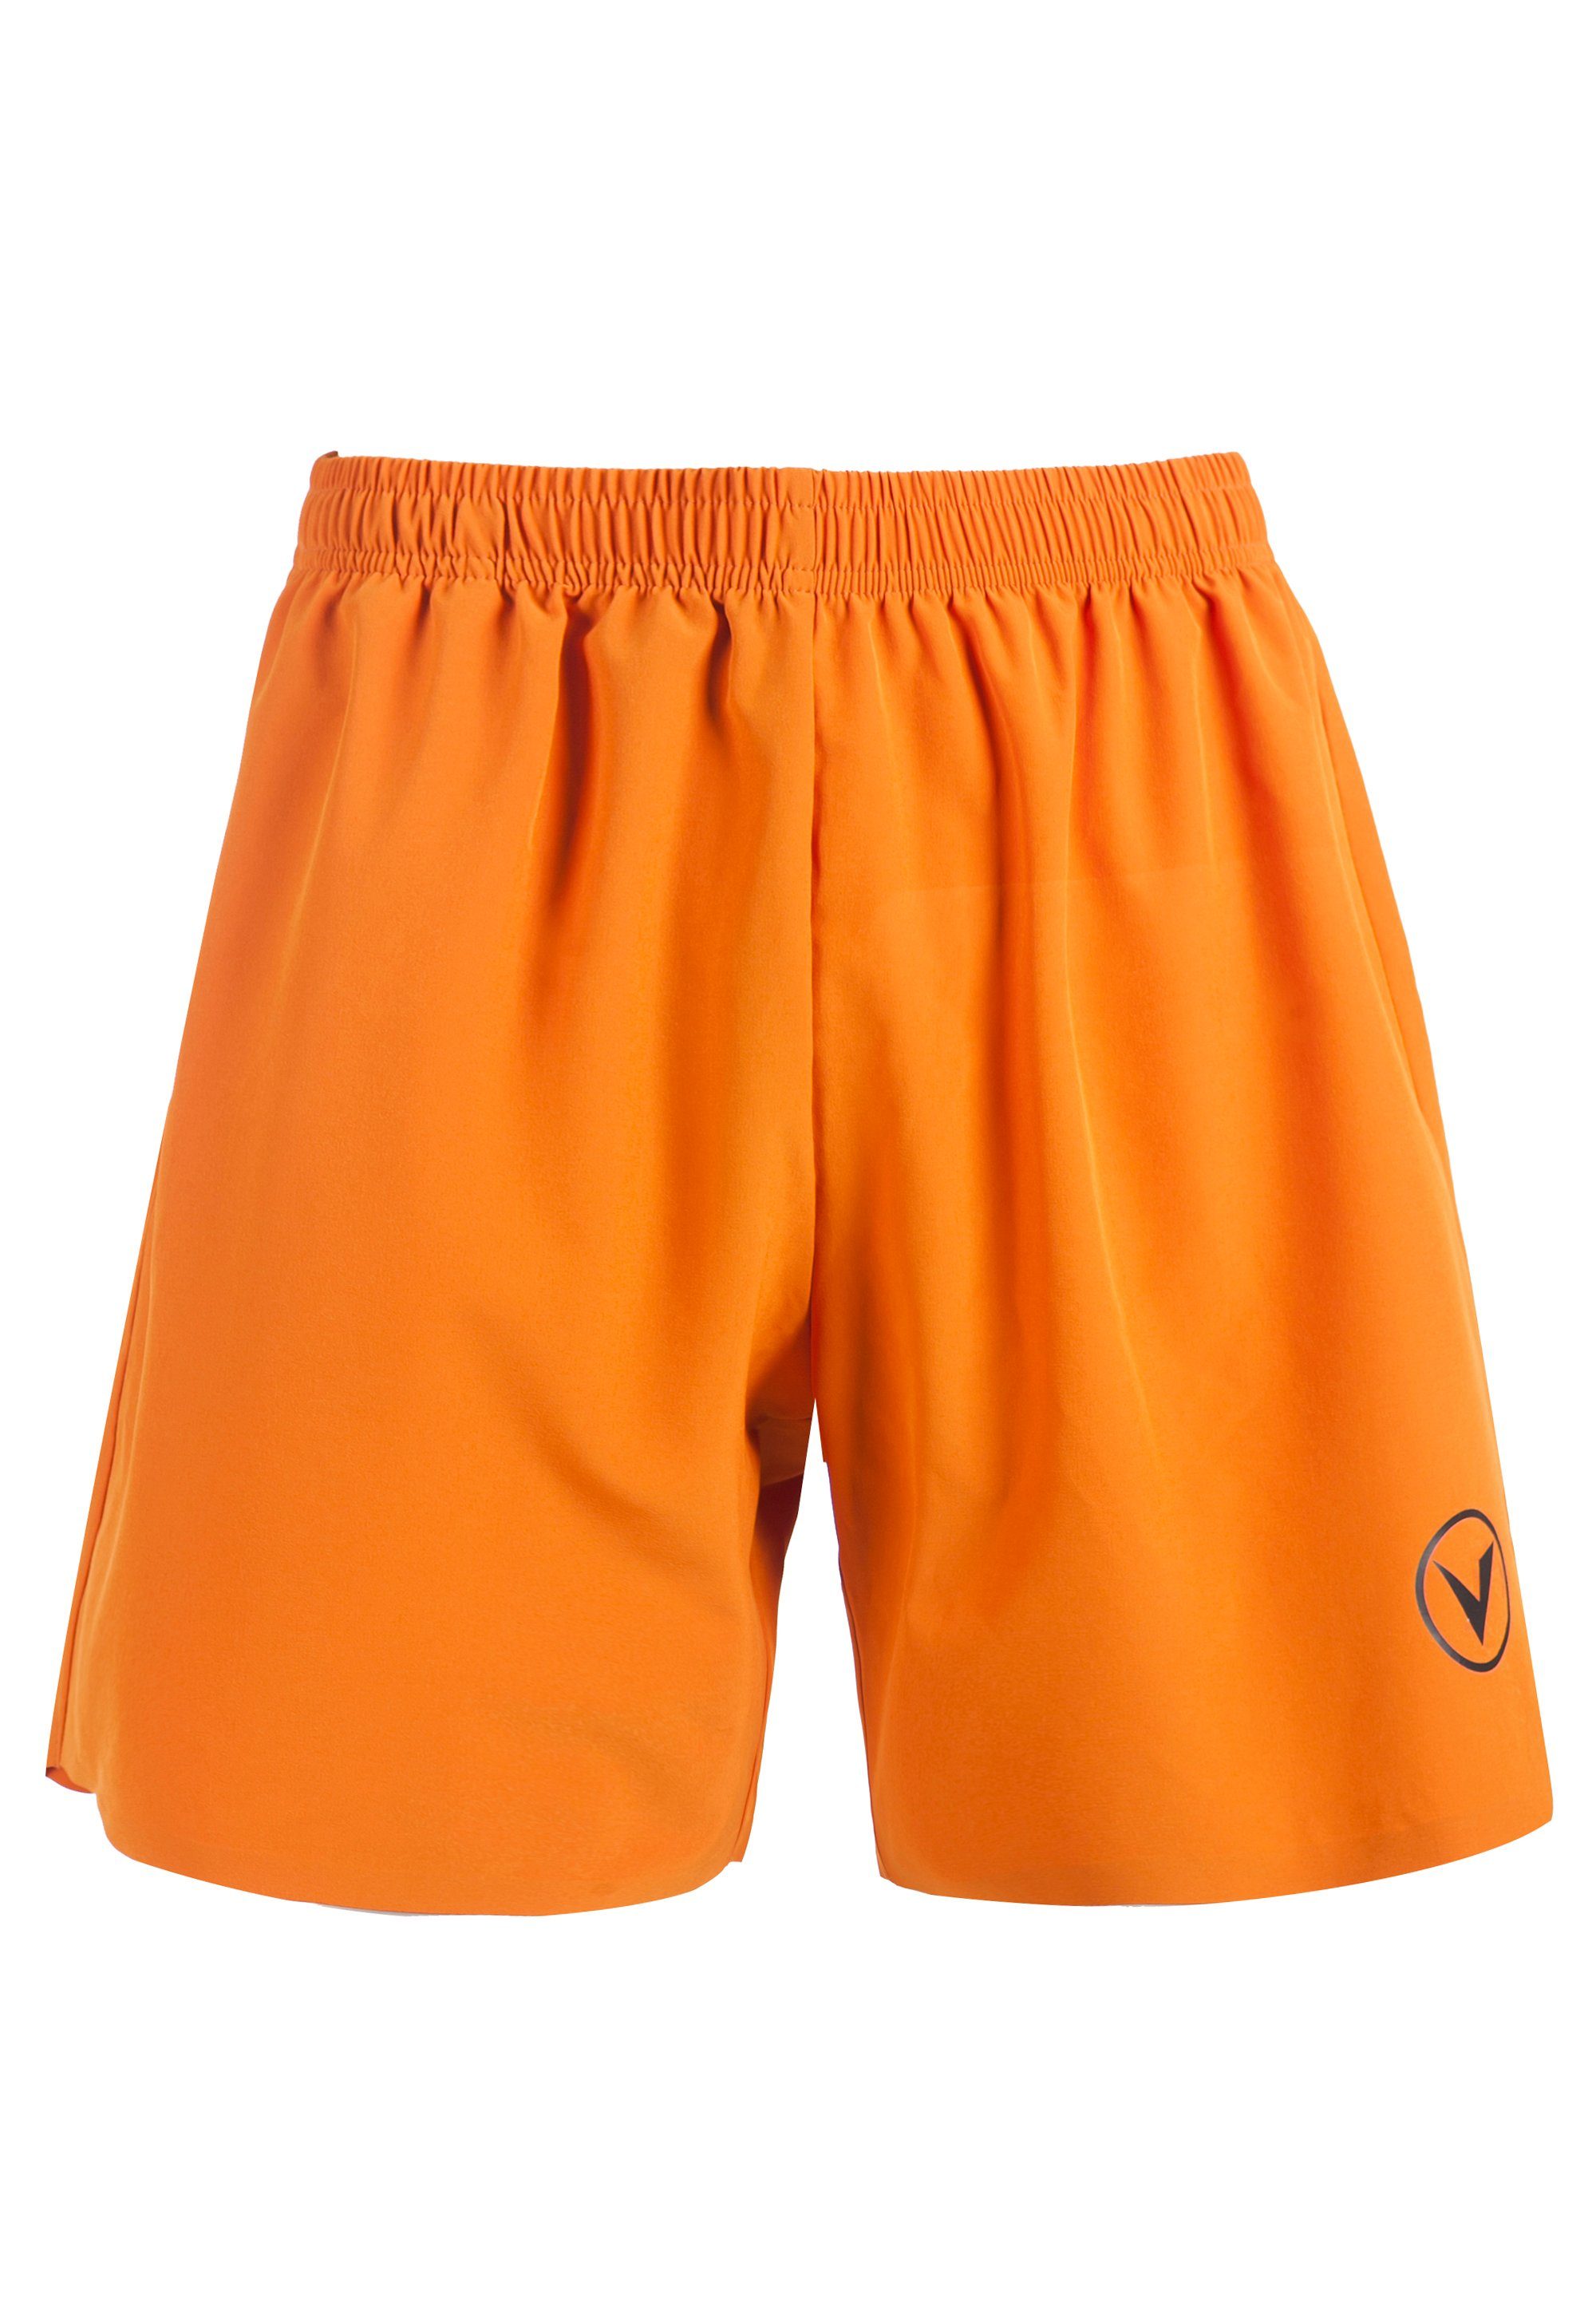 mit M SPIER Virtus activ komfortablem 4-Wege-Funktionsstretch orange Shorts